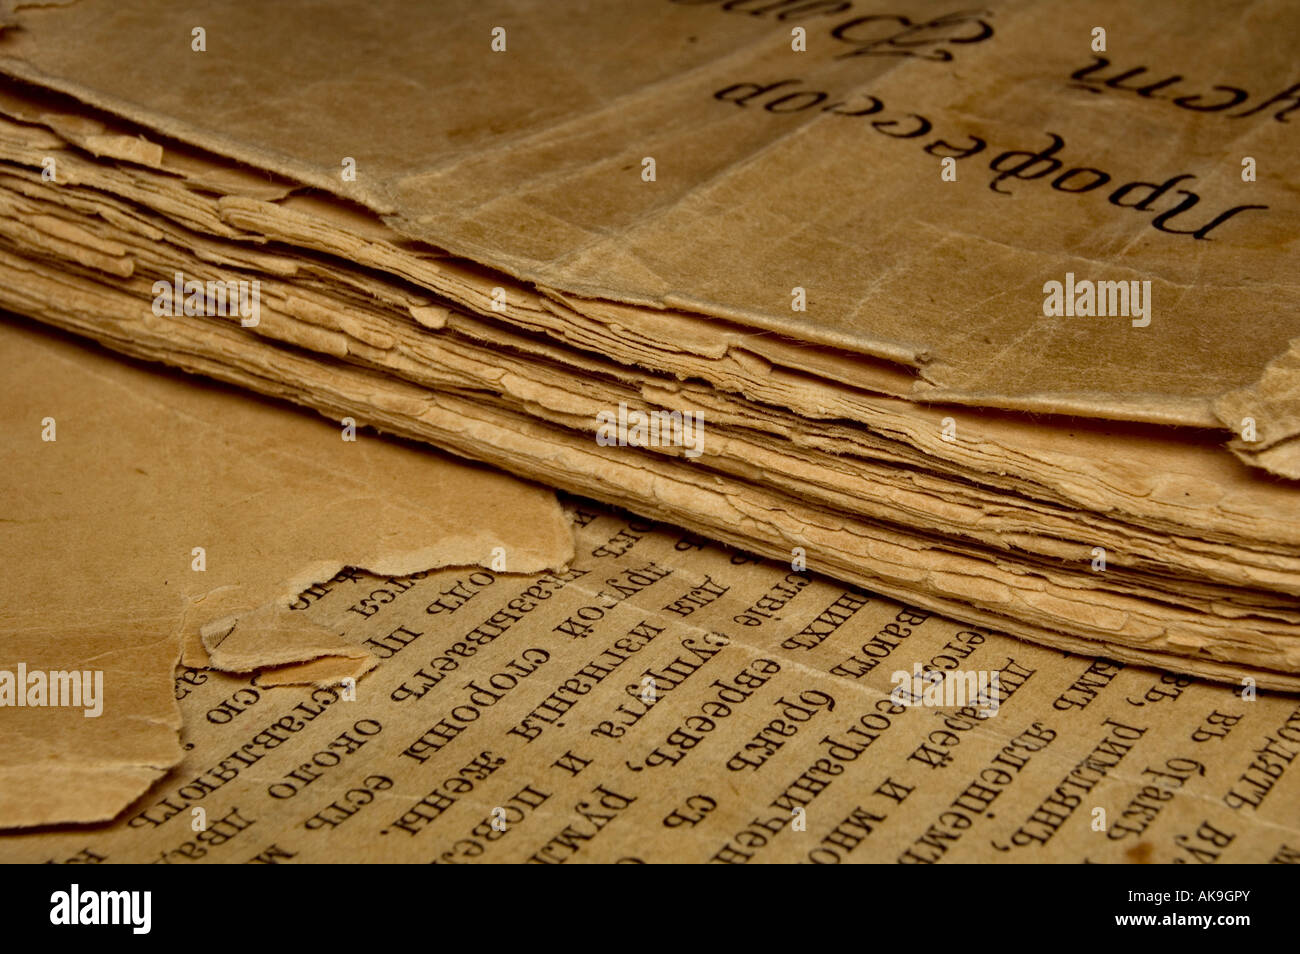 Nahaufnahme eines alten Buches mit zerrissenen Seiten und slawischen text Stockfoto